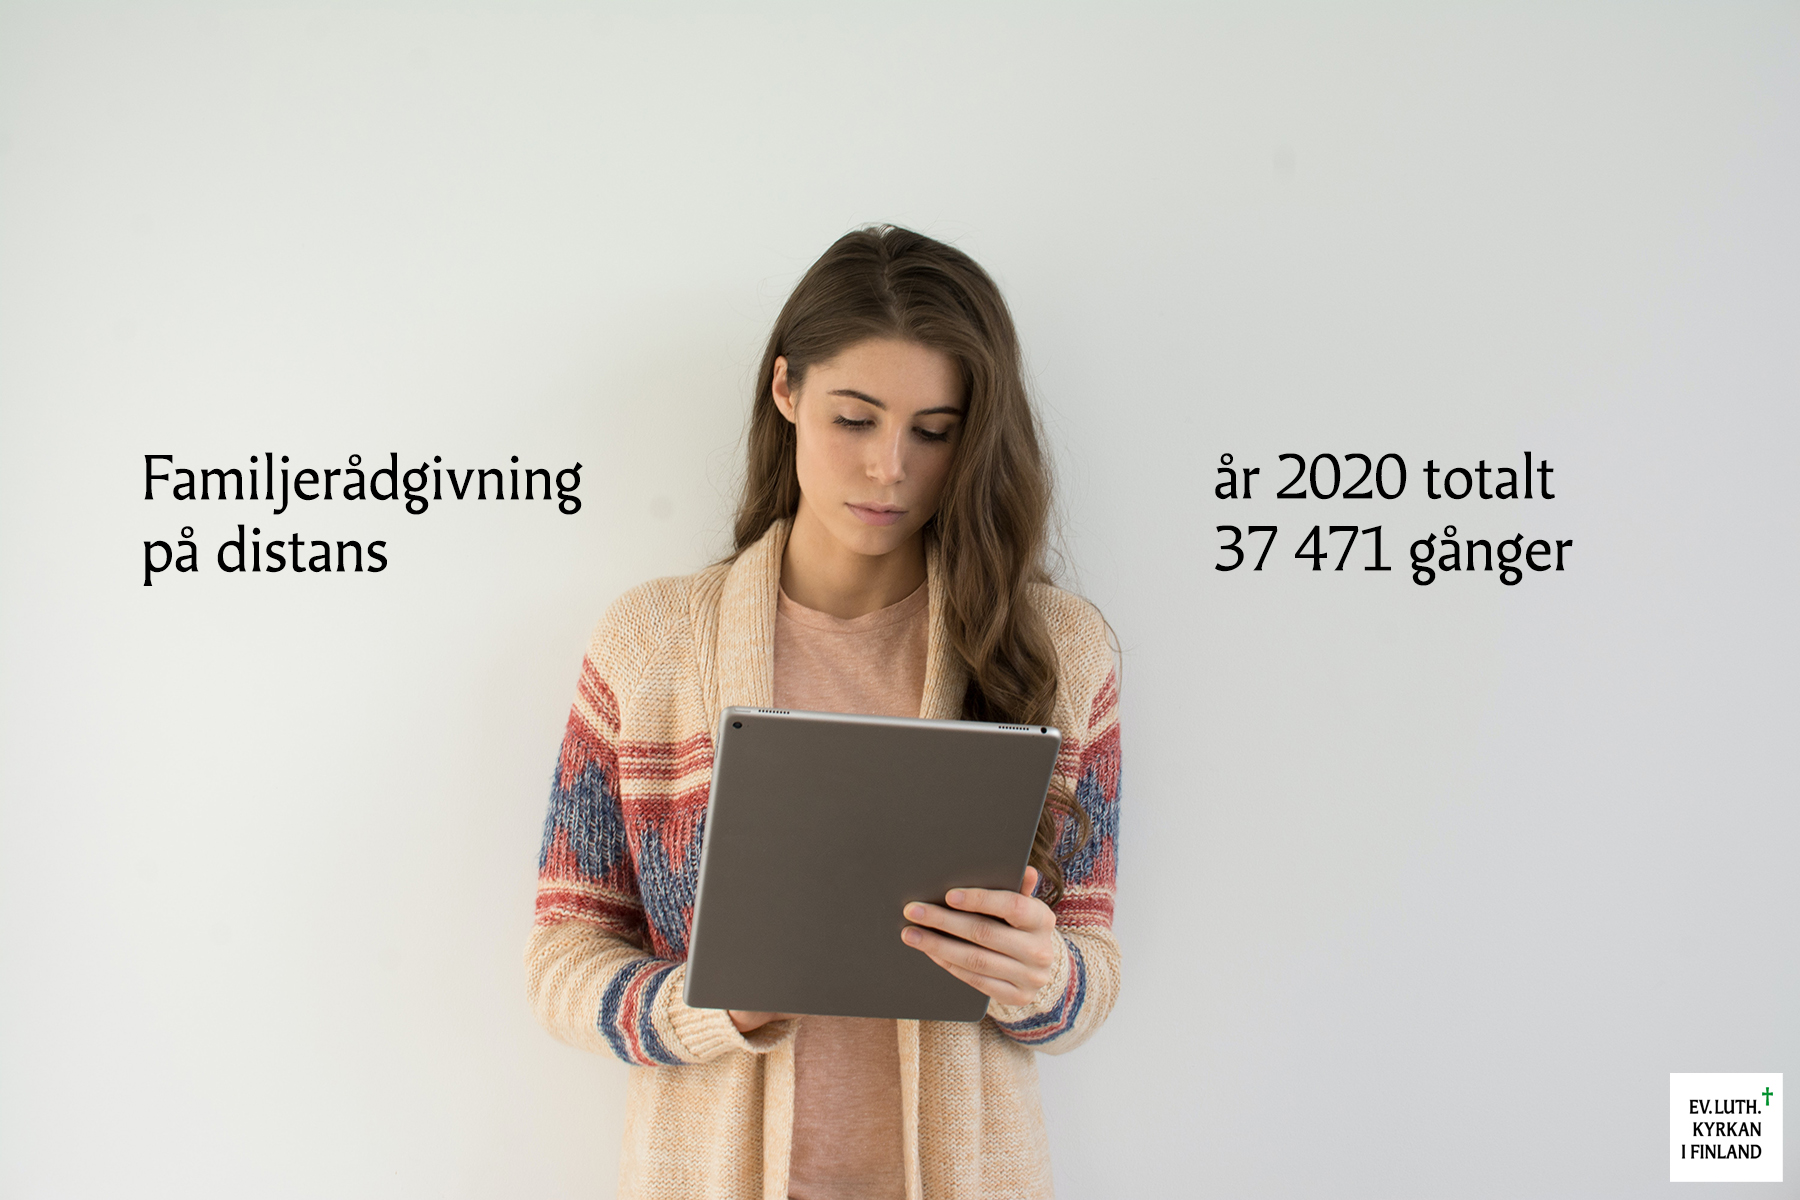 Kvinna håller dator i famnen. Text: Familjerådgivning på distans år 2020 totalt 37471 gånger.